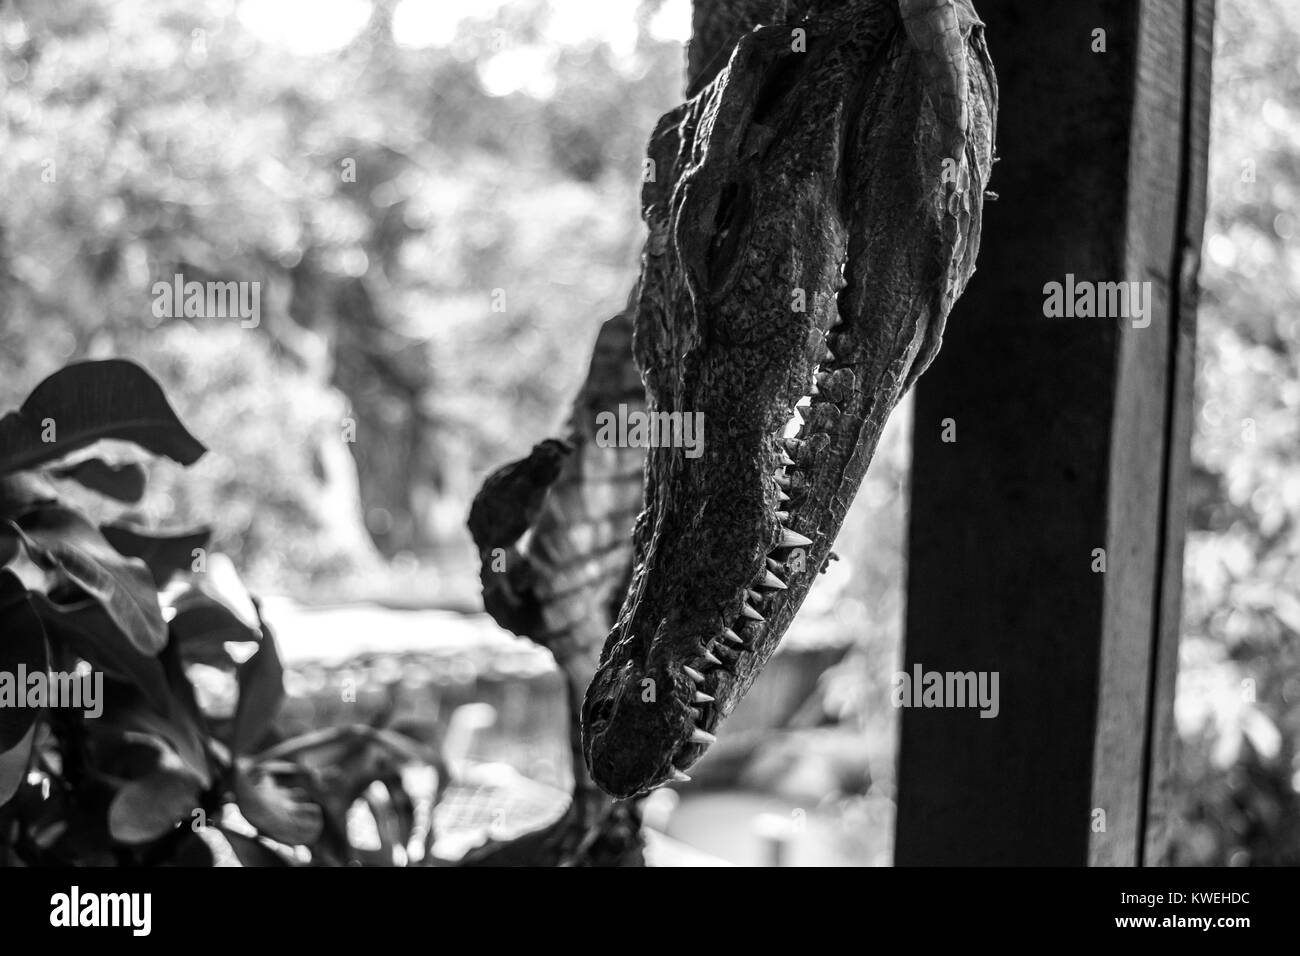 Der Kopf einer kleinen Krokodil, hängen auf dem Display mit dem Rest des gehäutet und getrockneten Körper, in einem schwimmenden Restaurant in Kampong Phluk, Kambodscha Stockfoto